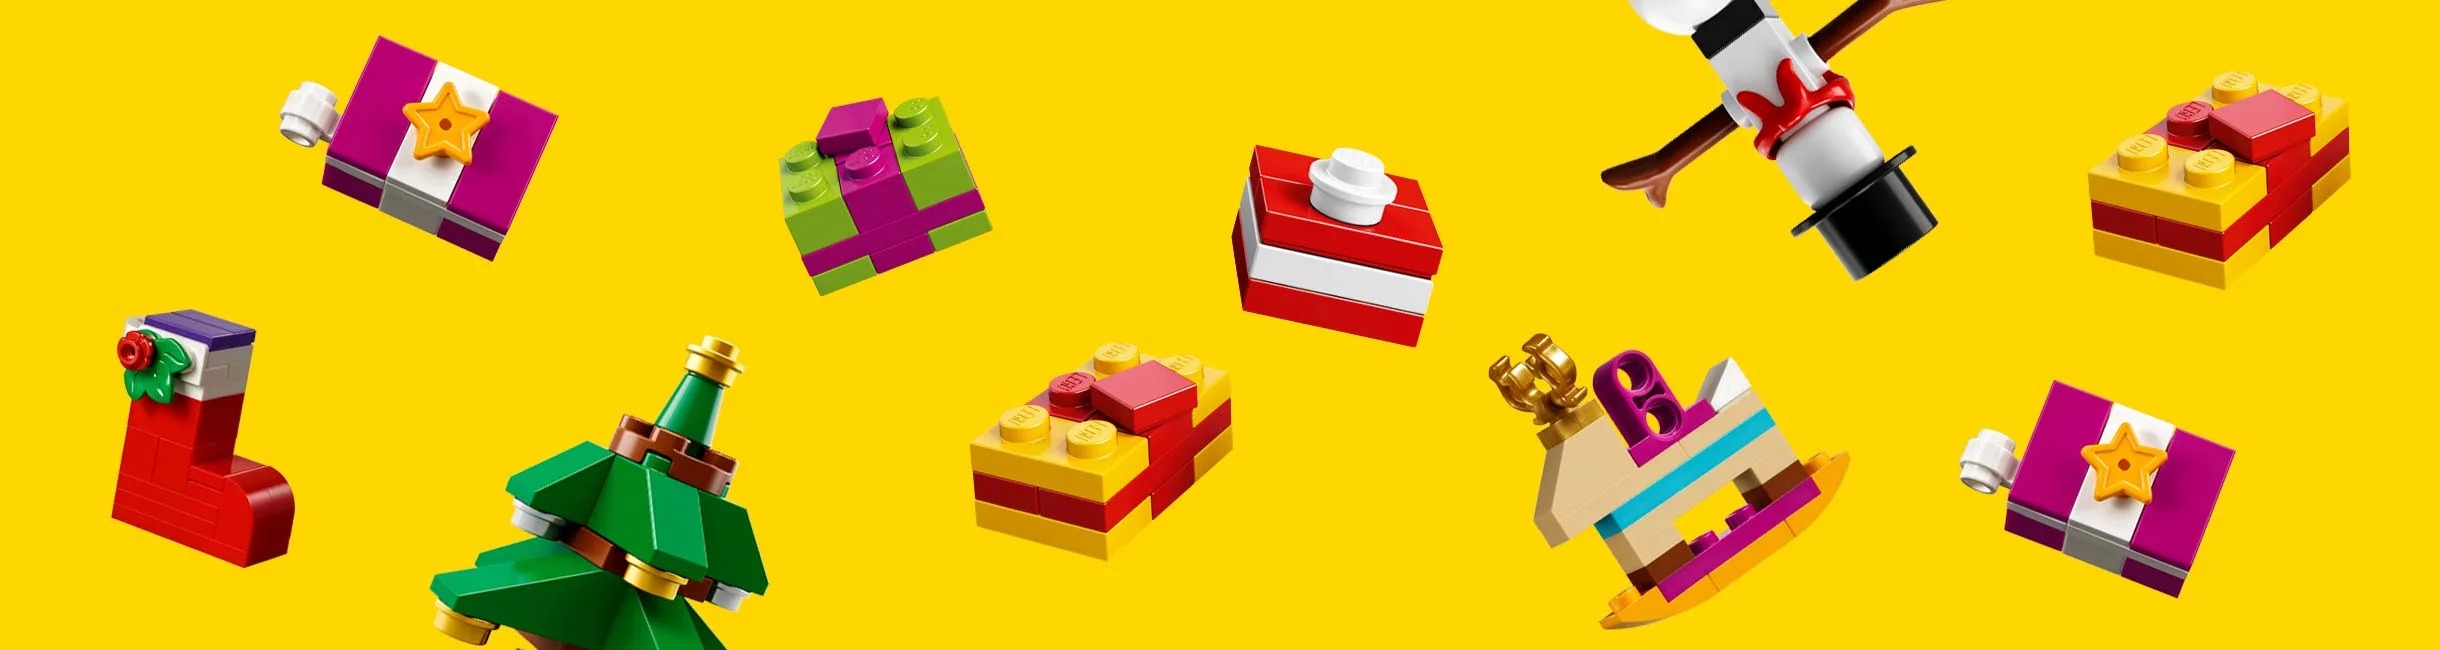 Рекламная акция LEGO (Лего) «Упакуйте!»